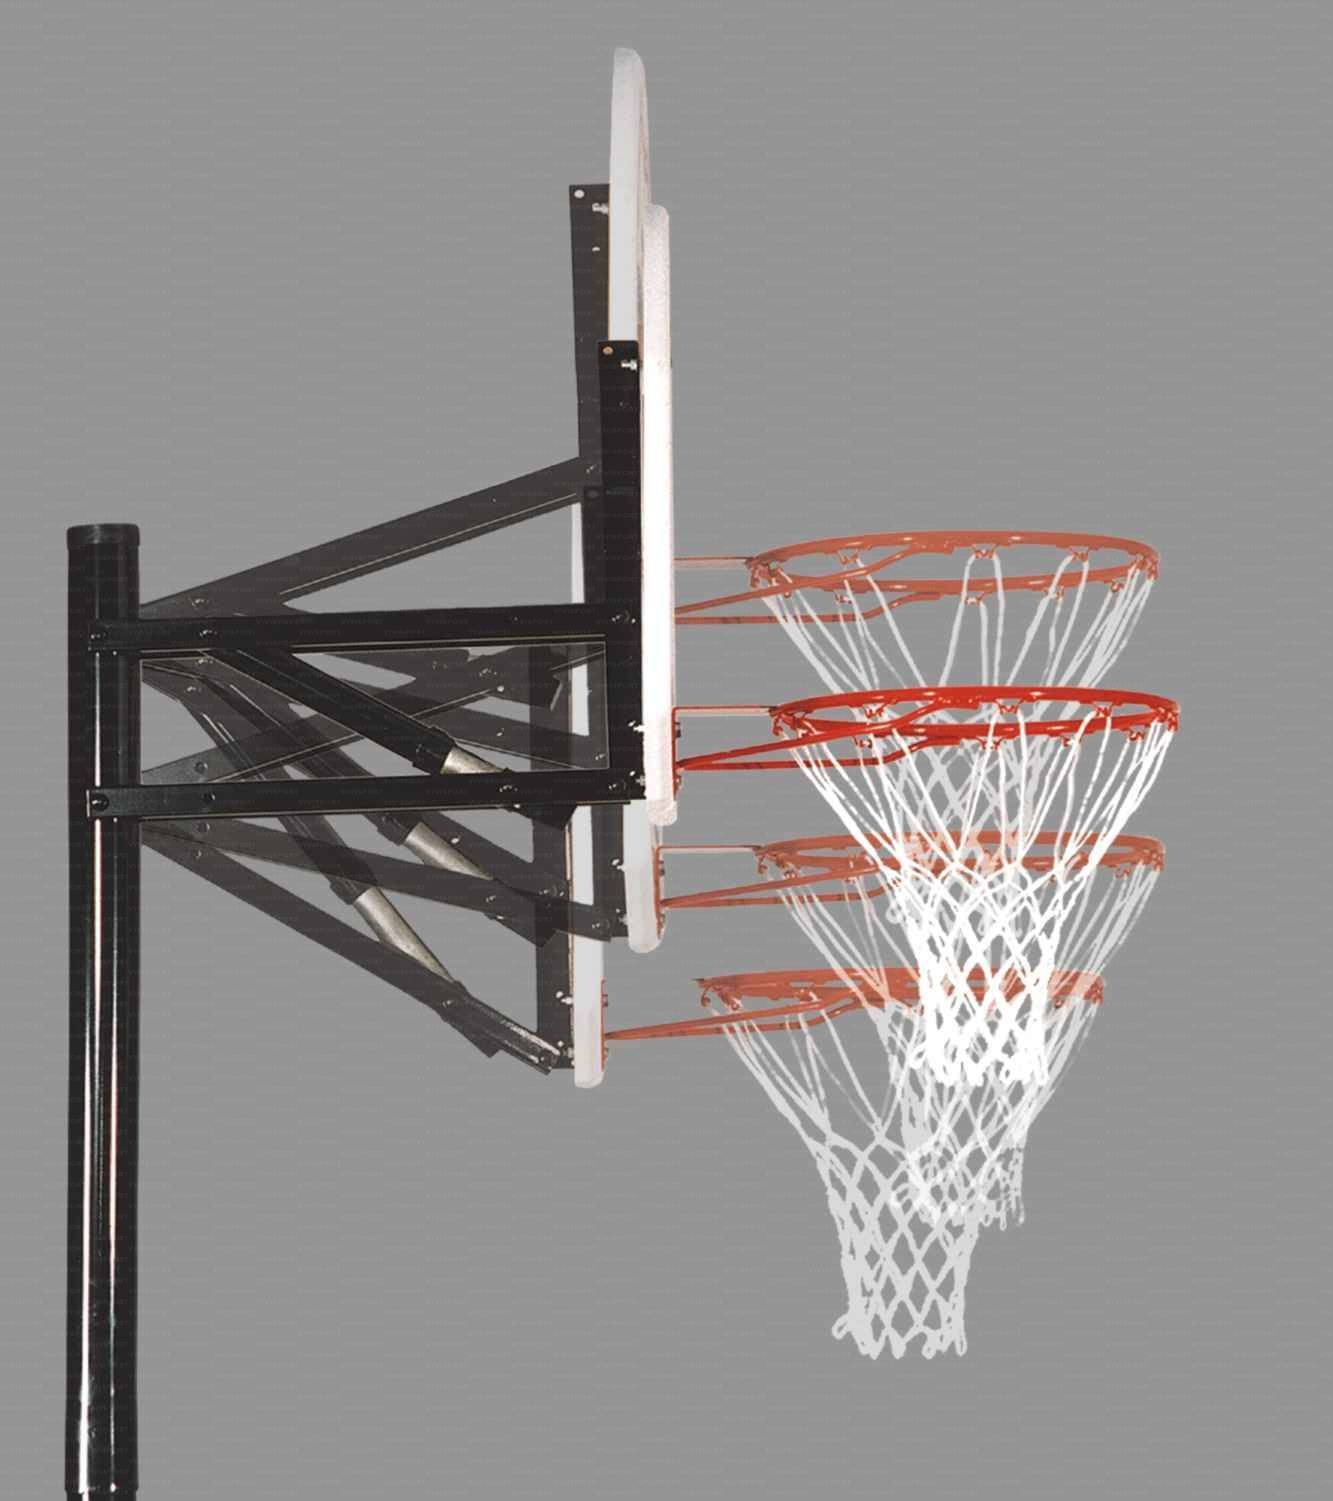 Mezzo impianto basket/minibasket con zavorra riempibile nuovo sistema a scatto per posizionamento altezza tabellone mod. Los Angeles.